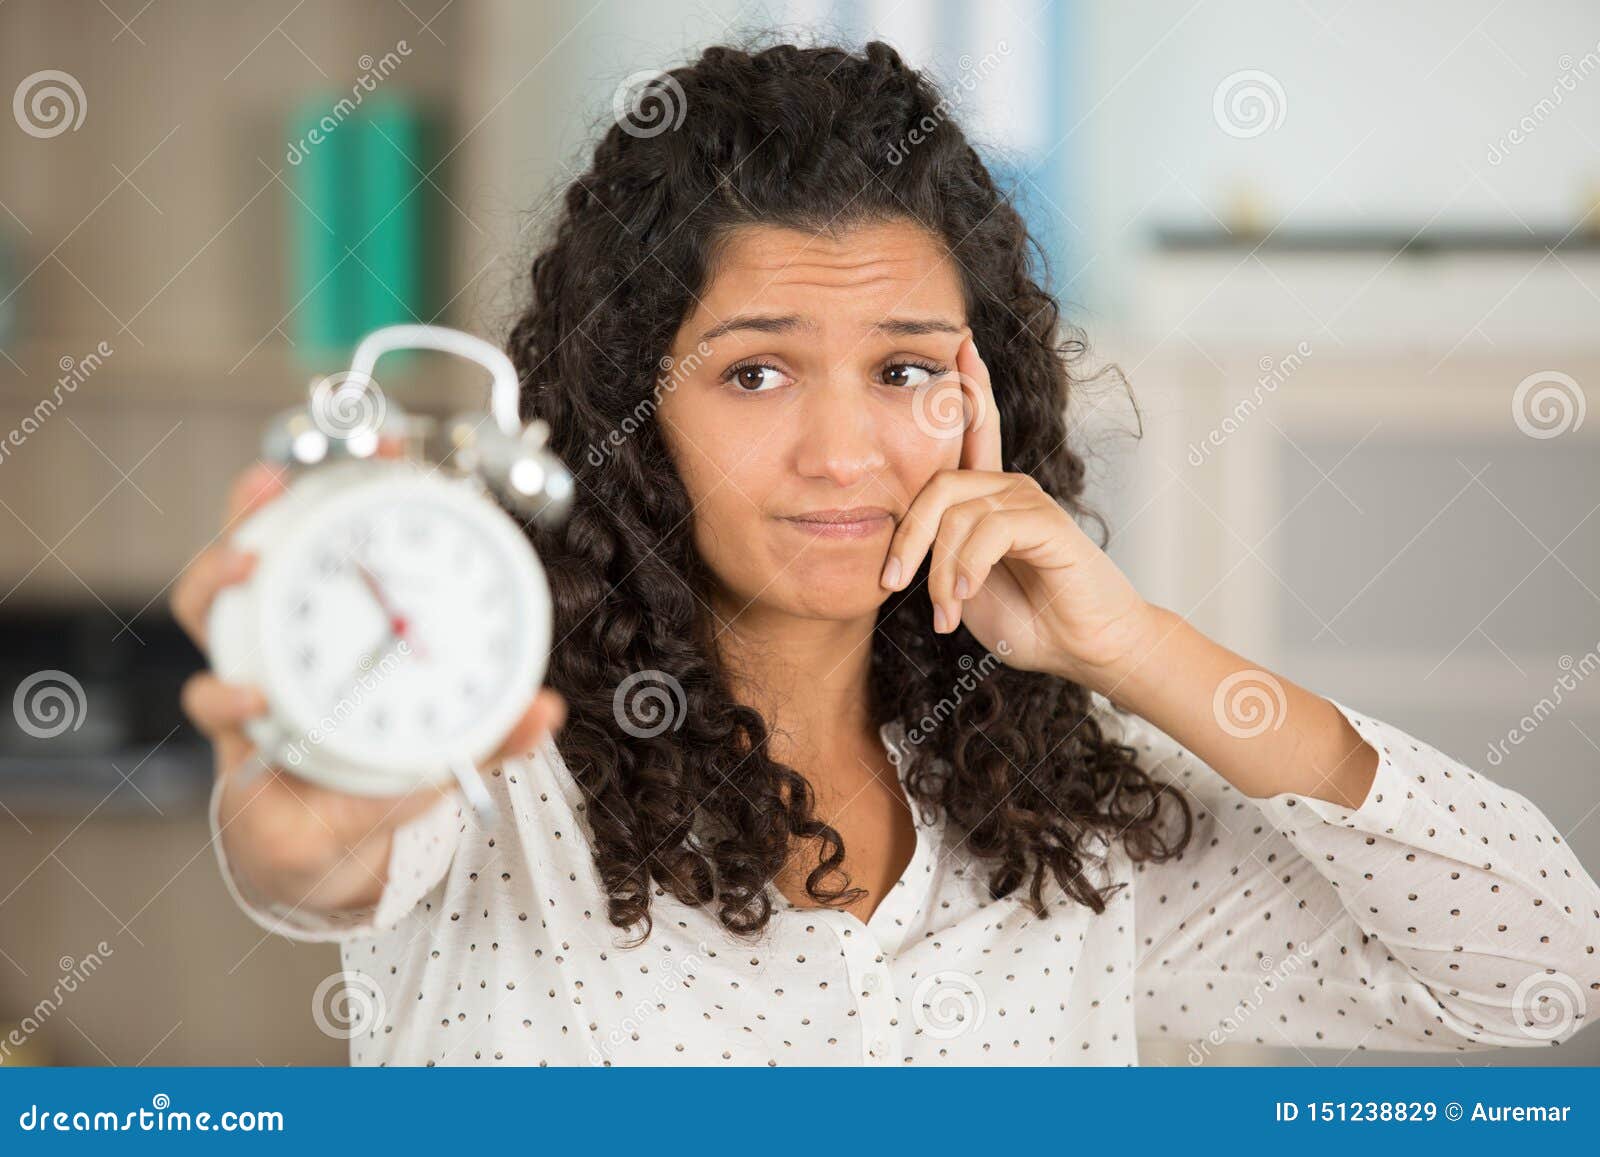 Удивилась какое время. Женщина с секундомером в постели. Девушка собирается на работу и руках держит будильник.